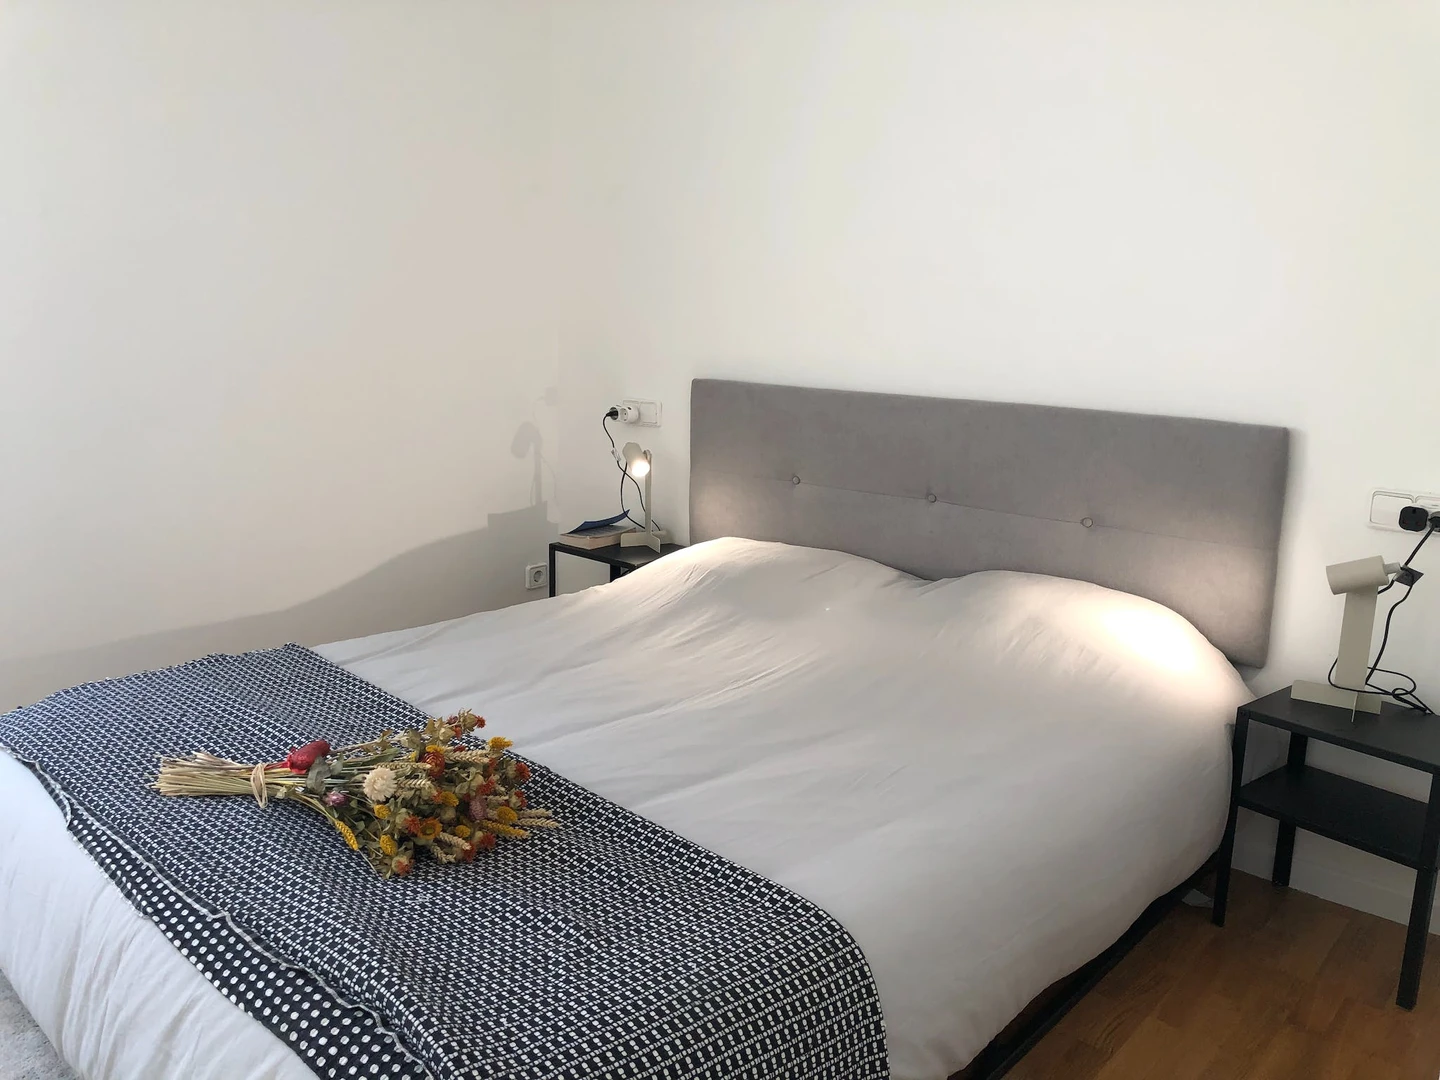 Alojamiento de 2 dormitorios en Gijón